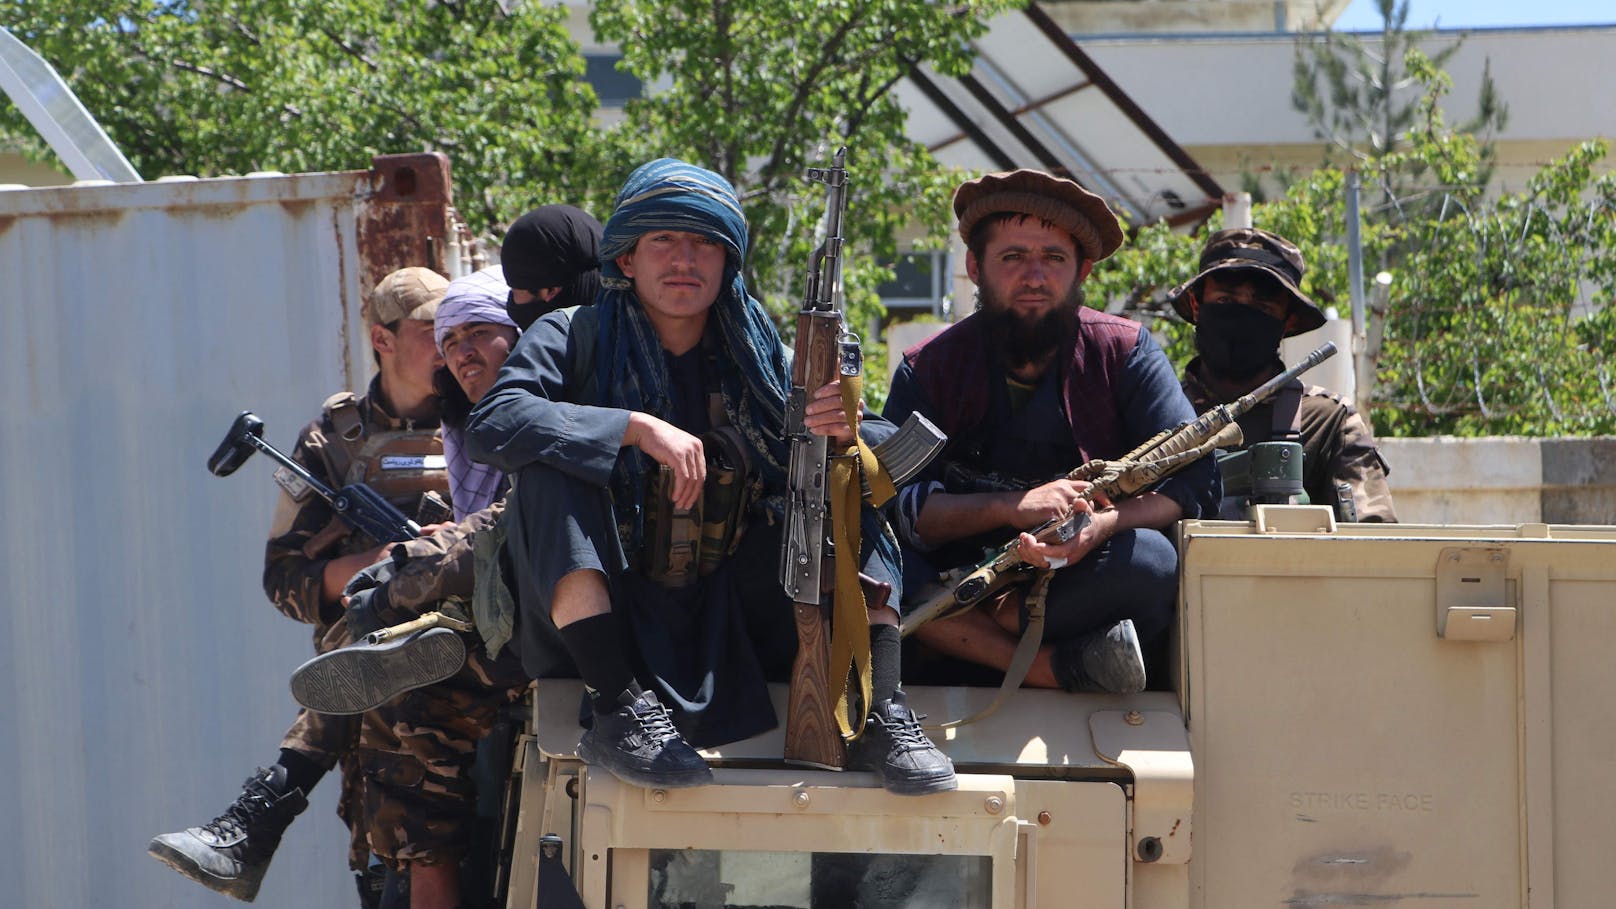 Justiz-Knaller: Abschiebungen nach Afghanistan möglich